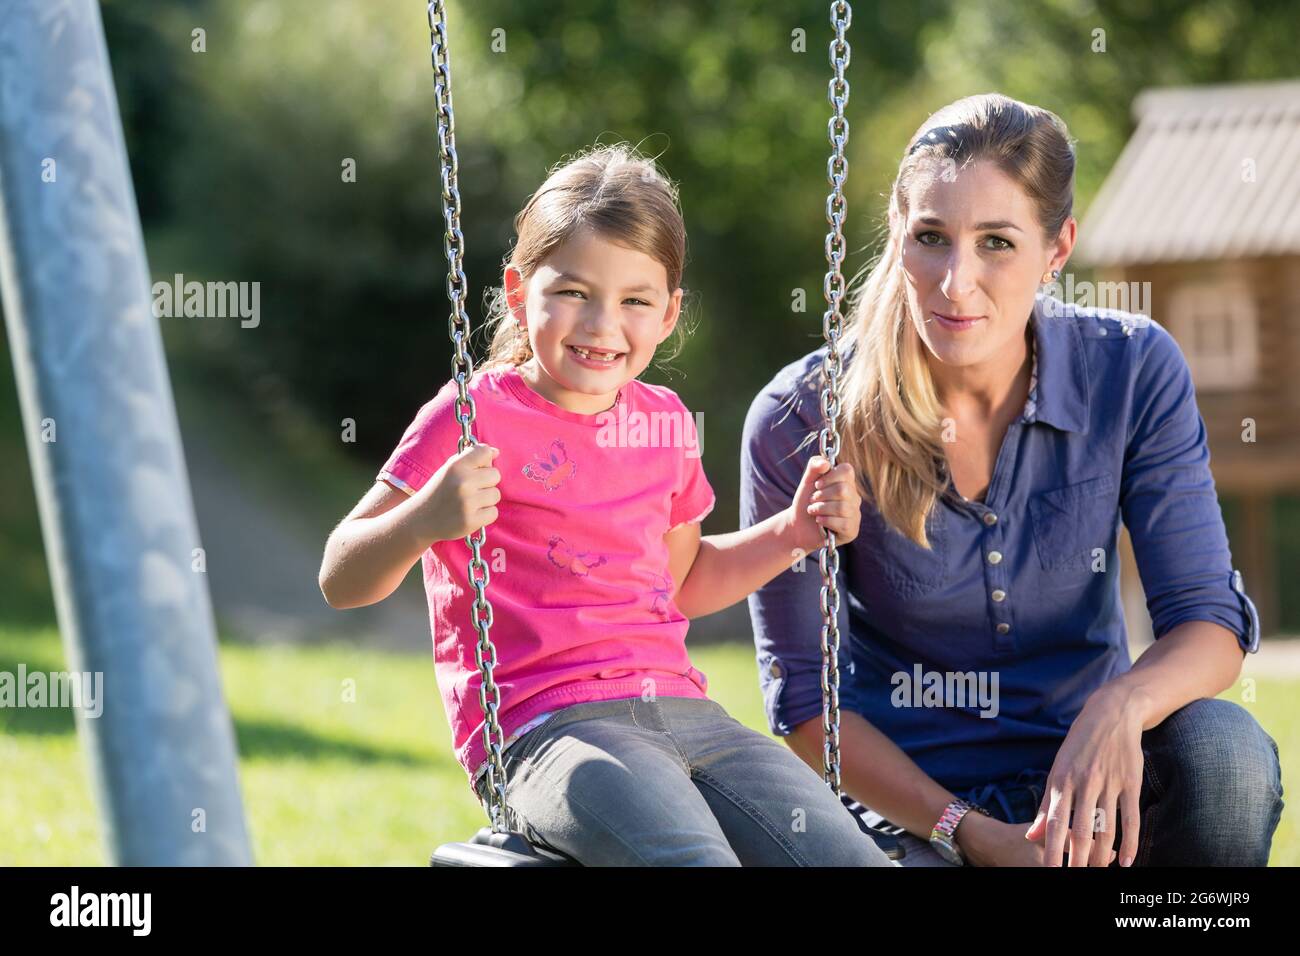 Frau mit lachenden Mädchen auf Spielplatz Schaukel Spaß zusammen Stockfoto